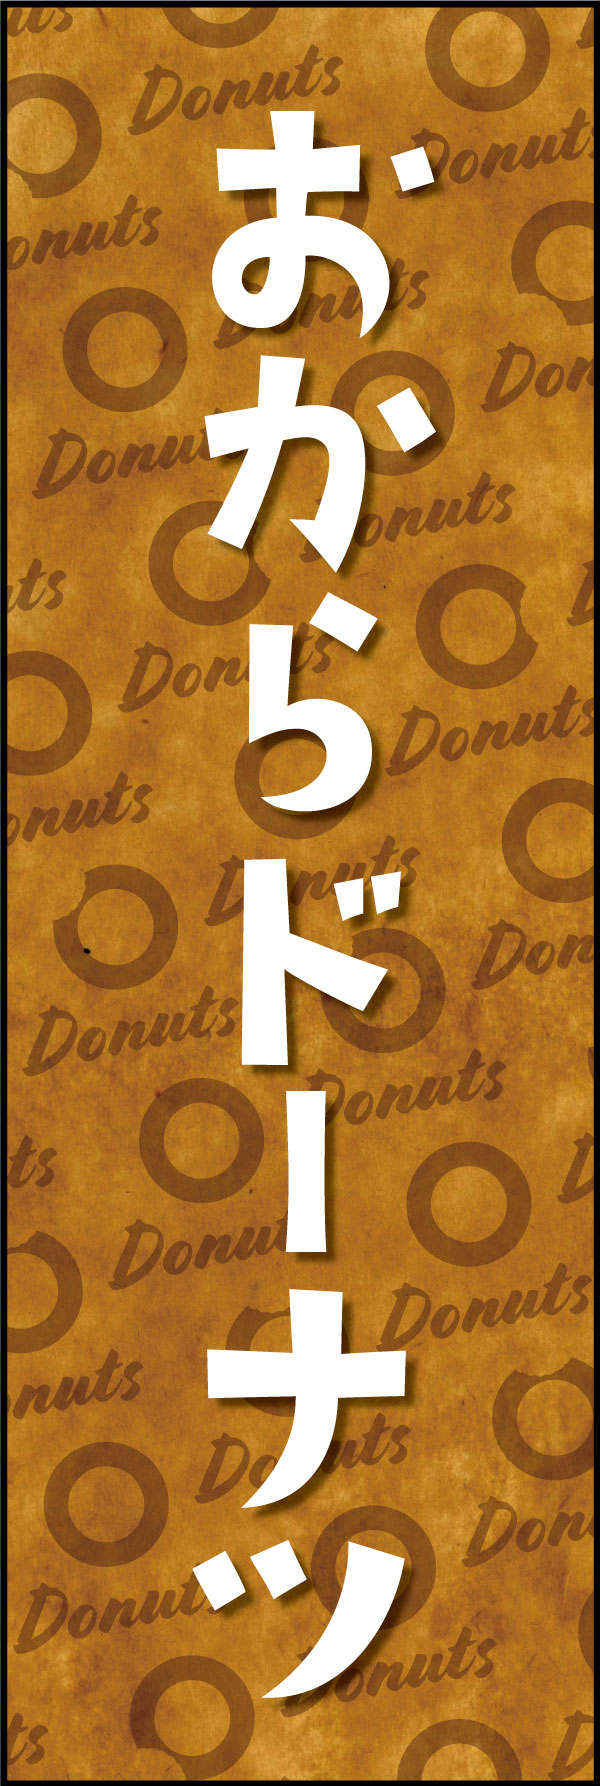 おからドーナツ 166_01 「おからドーナツ」ののぼりです。クラフト感ある包み紙のような背景デザインと文字で、ヘルシーでオーガニックな雰囲気を演出しました。（Y.M）